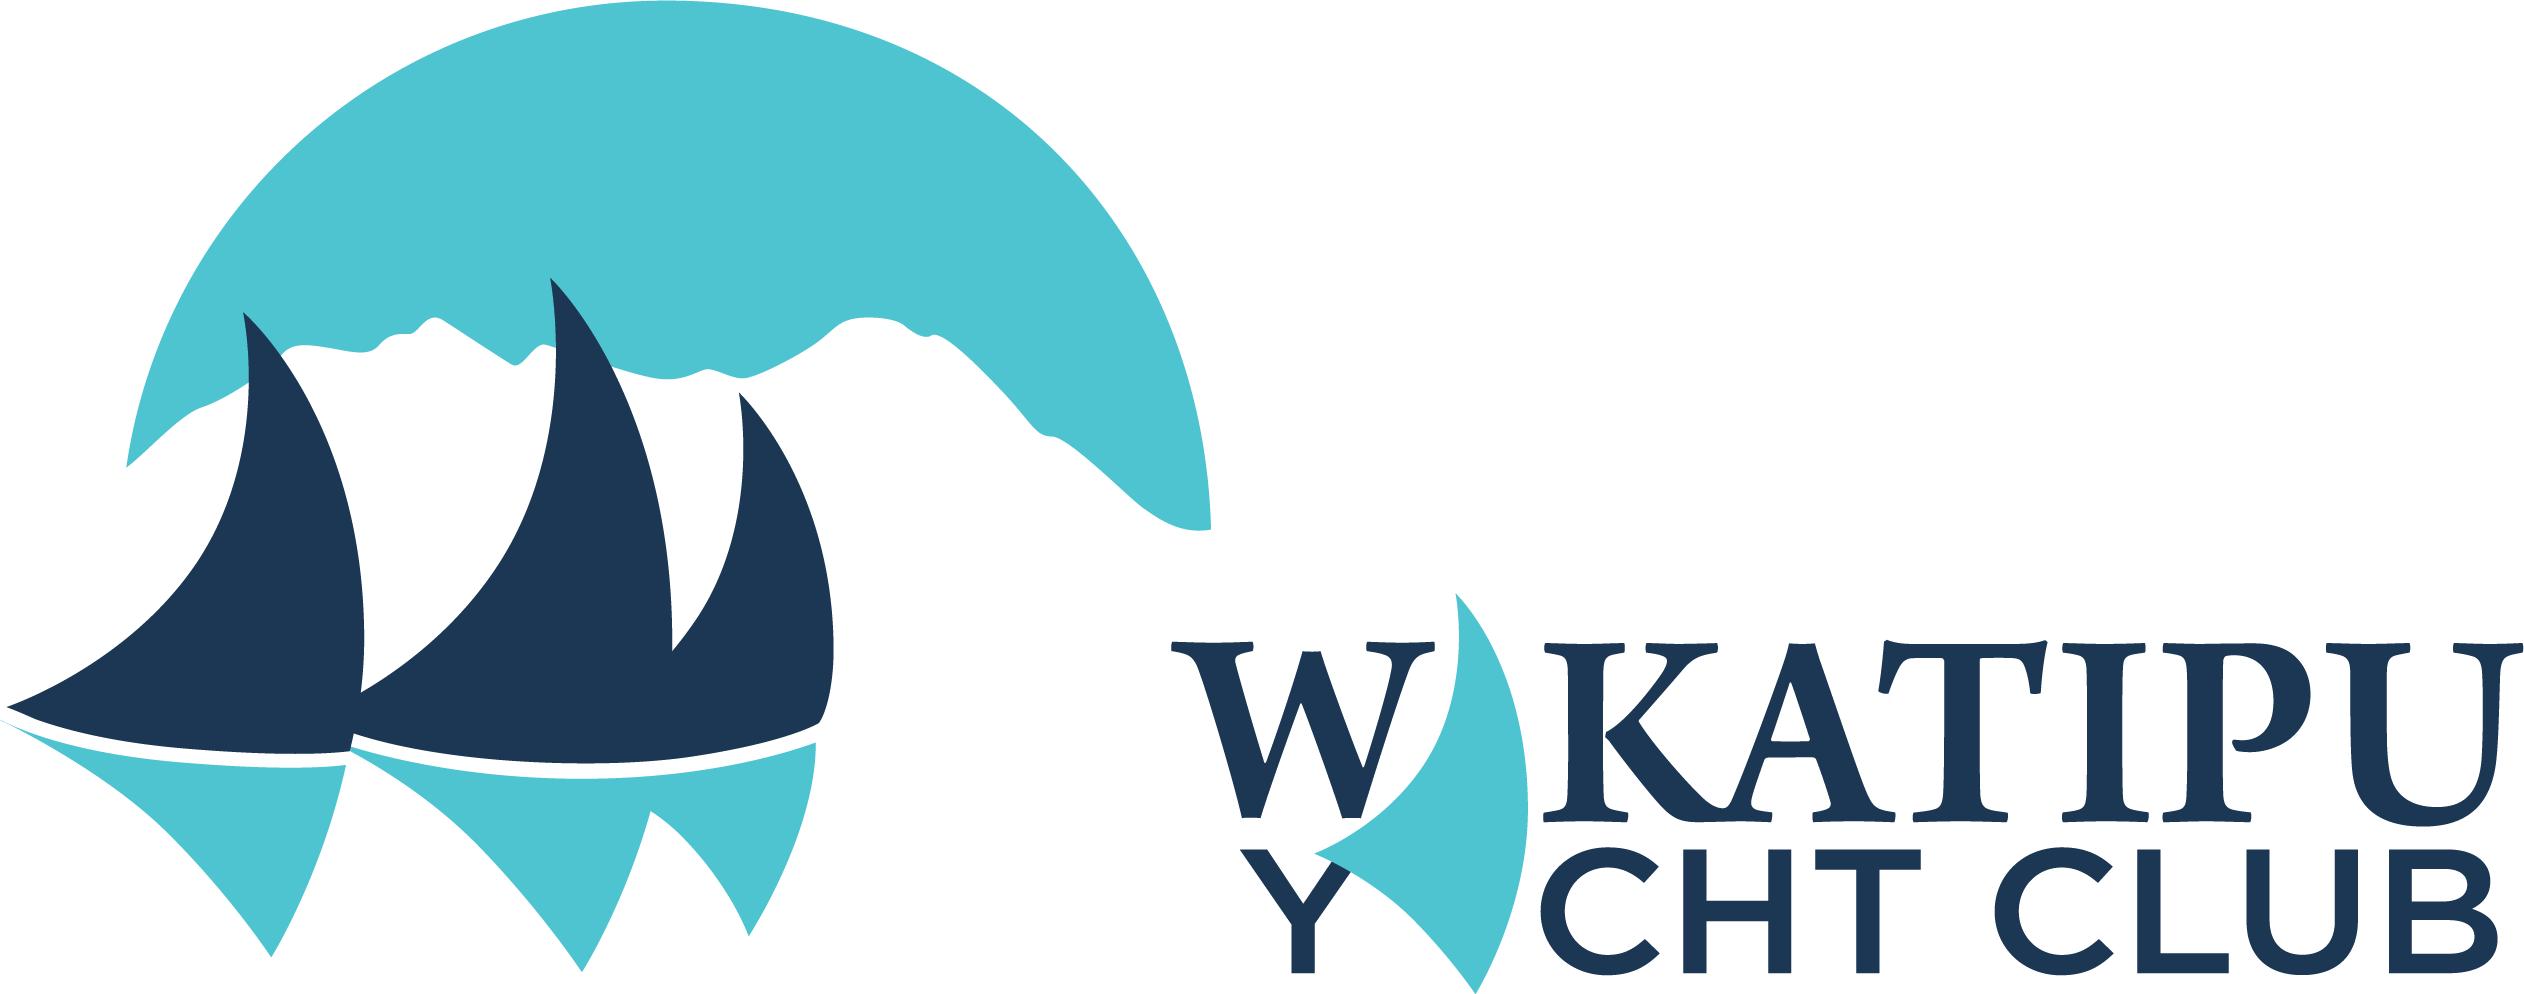 Wakatipu Yacht Club